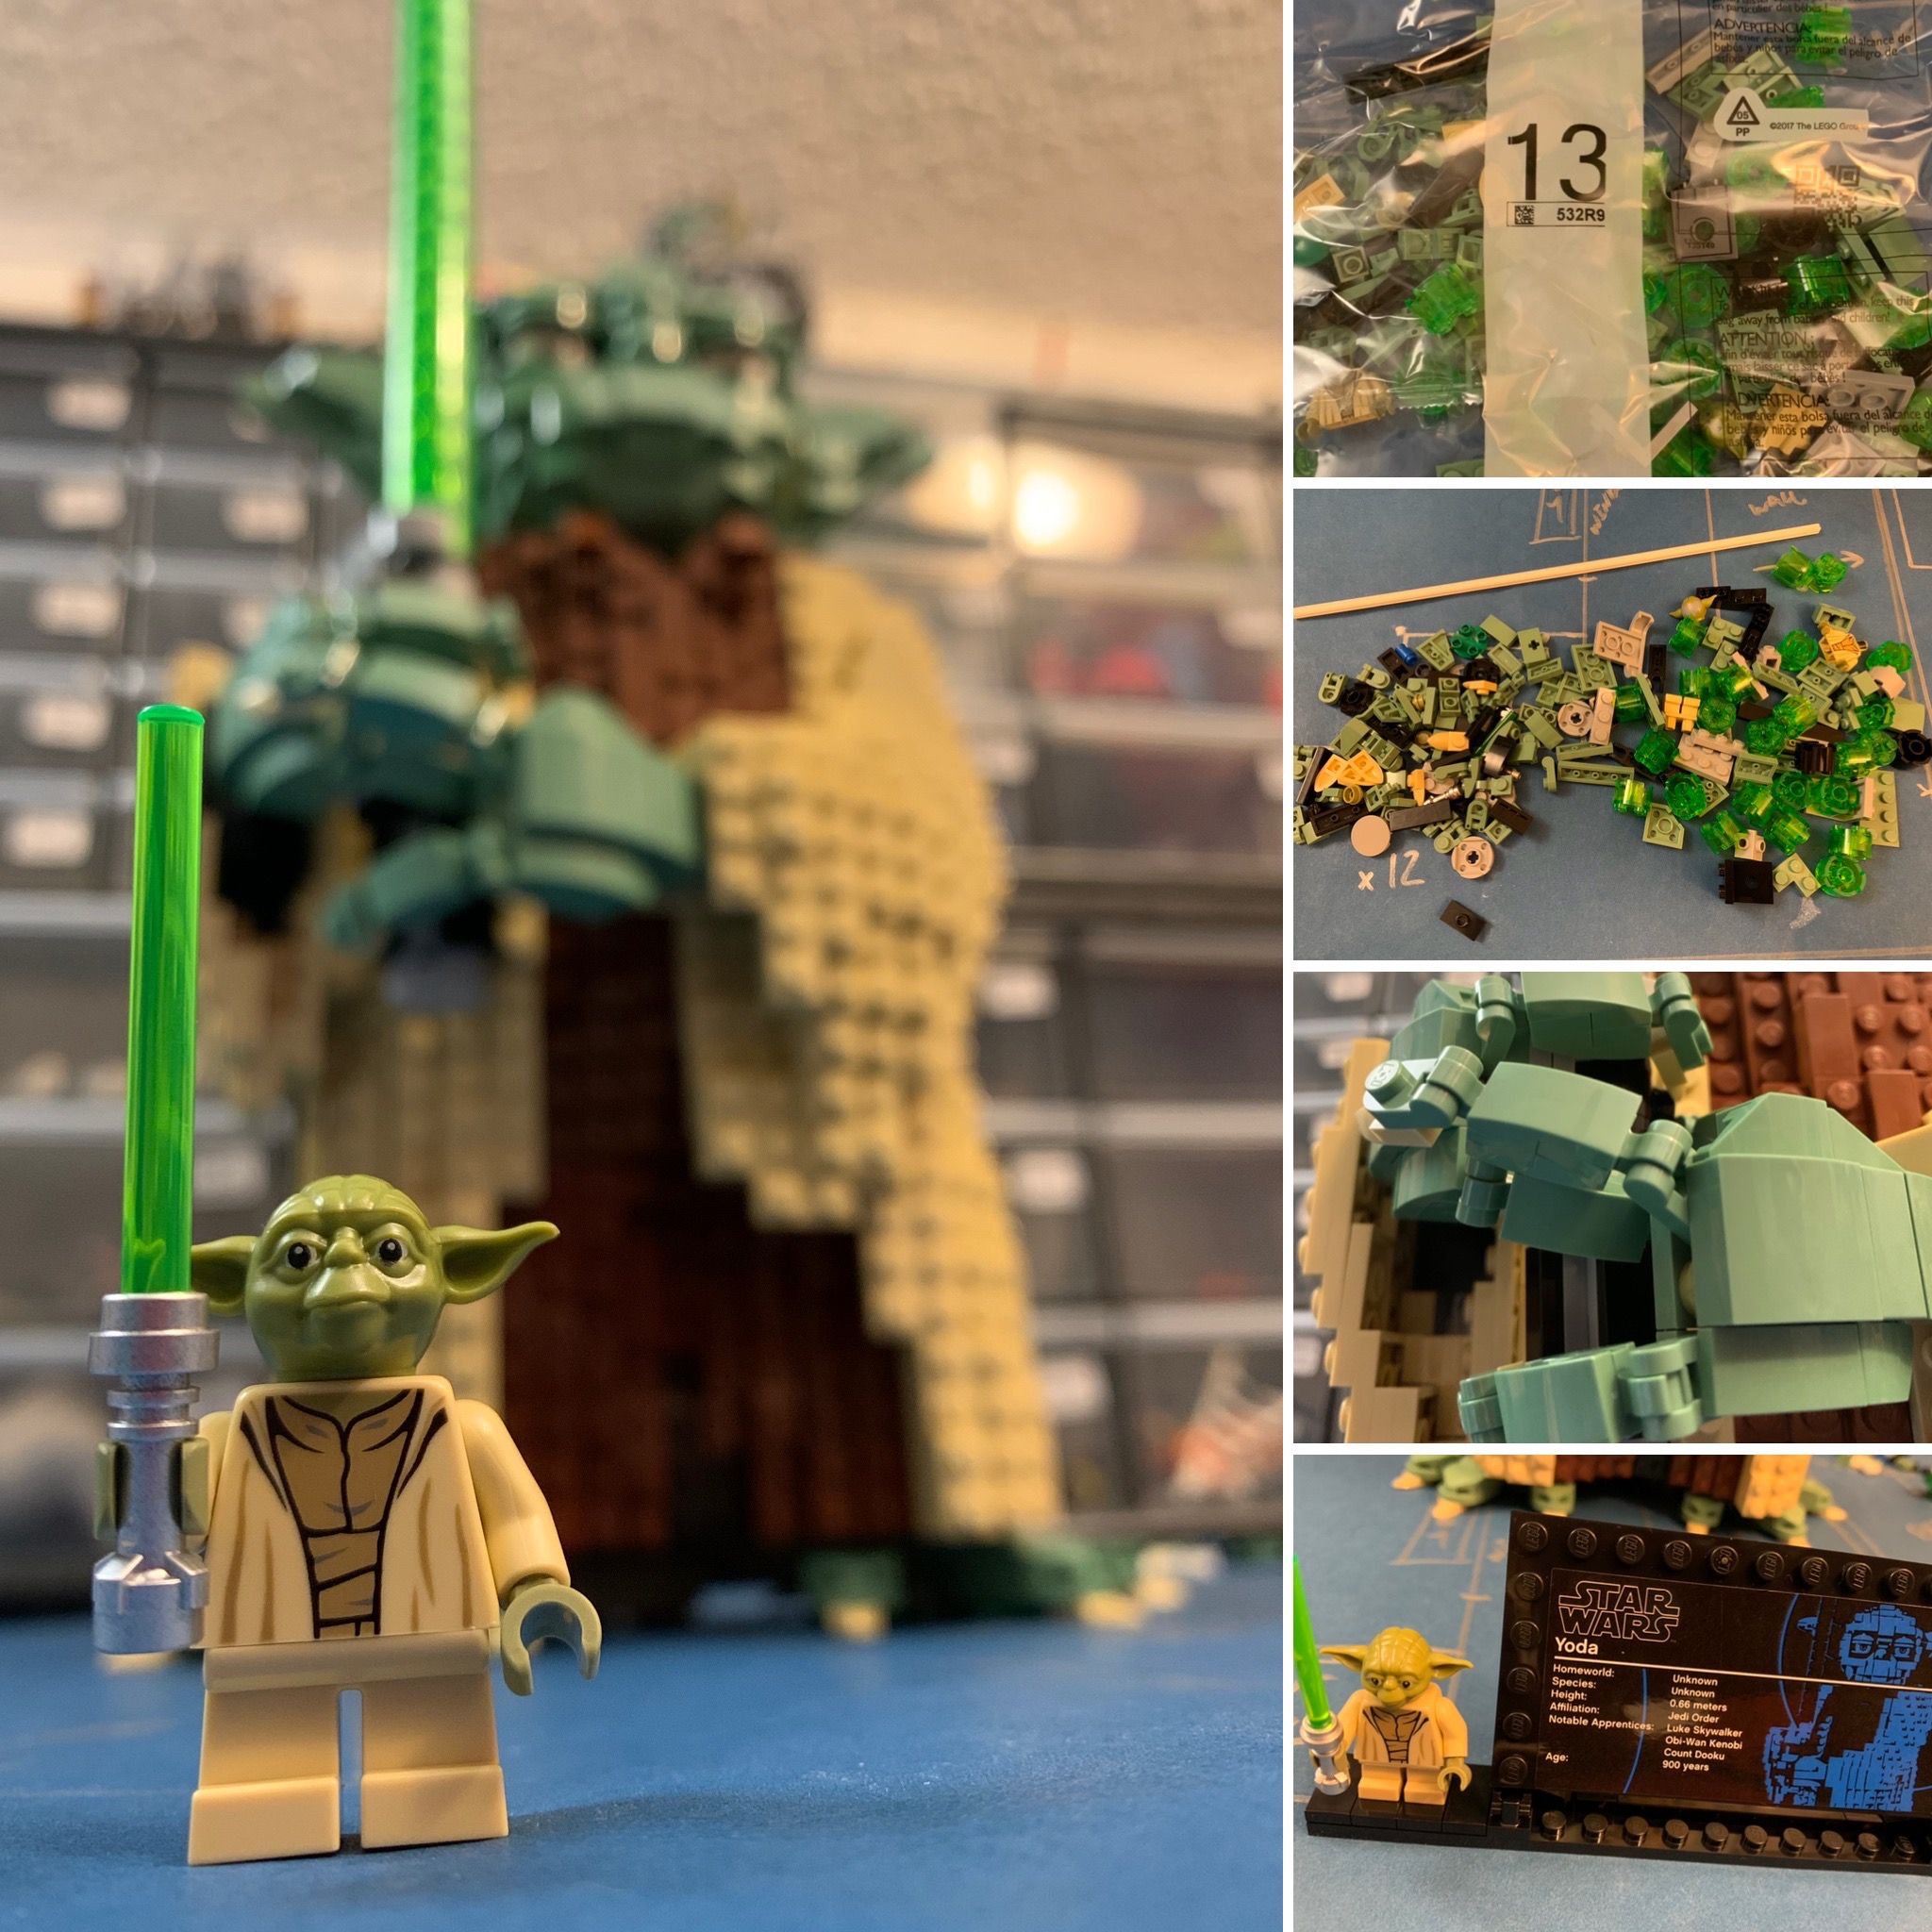 LEGO Star Wars 75255 Yoda - Lego Speed Build Review 